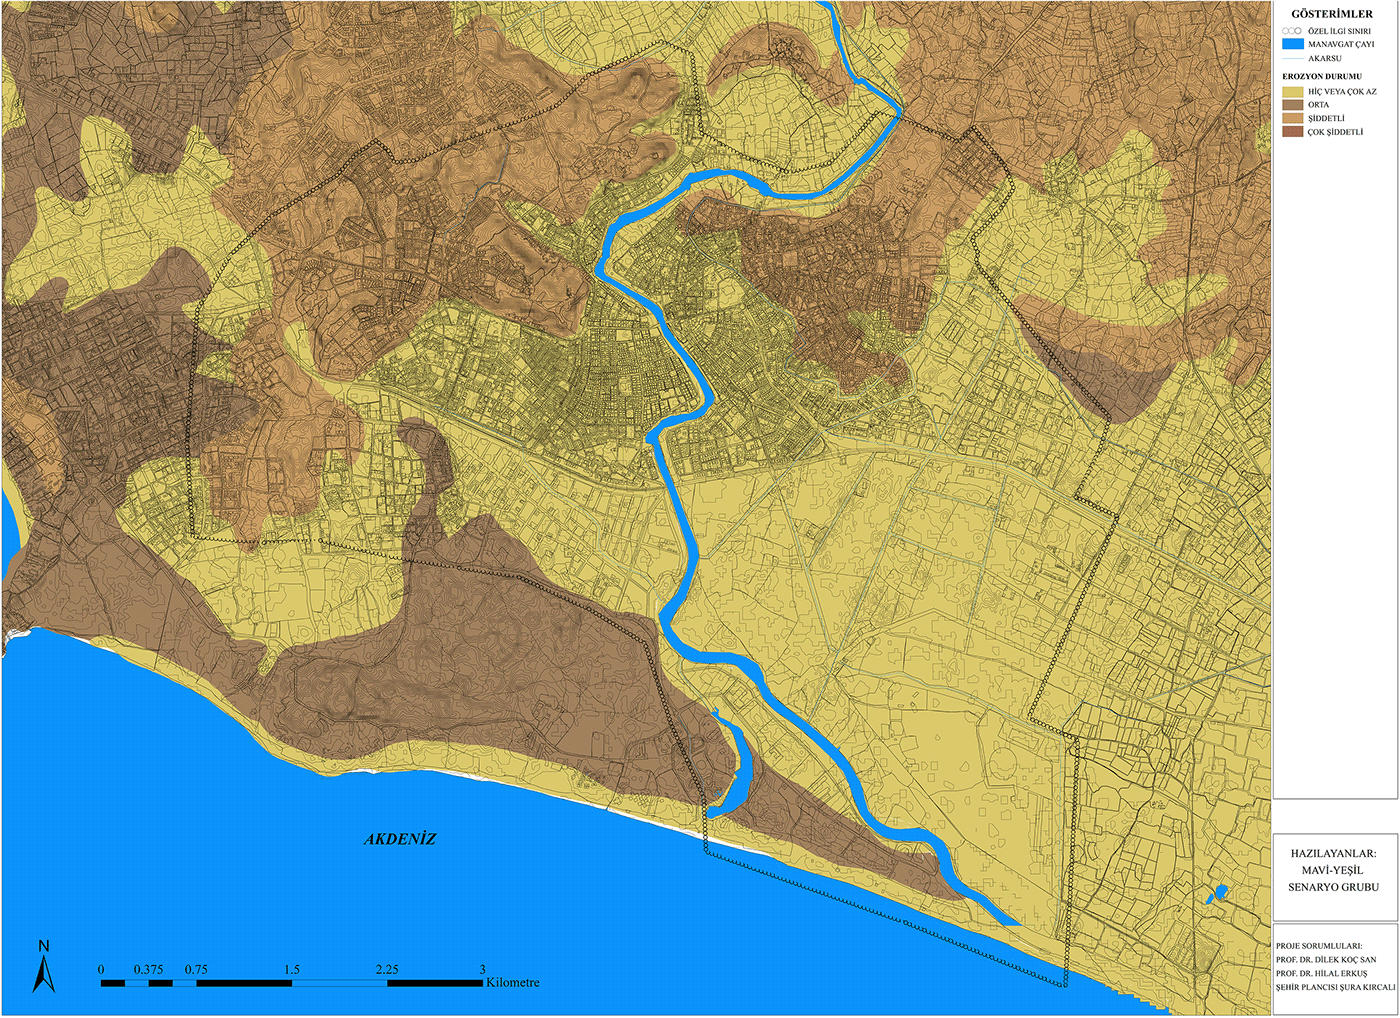 antalya manavgat architecture GIS ArcGIS erosion erosion analysis erosion condition urban planning